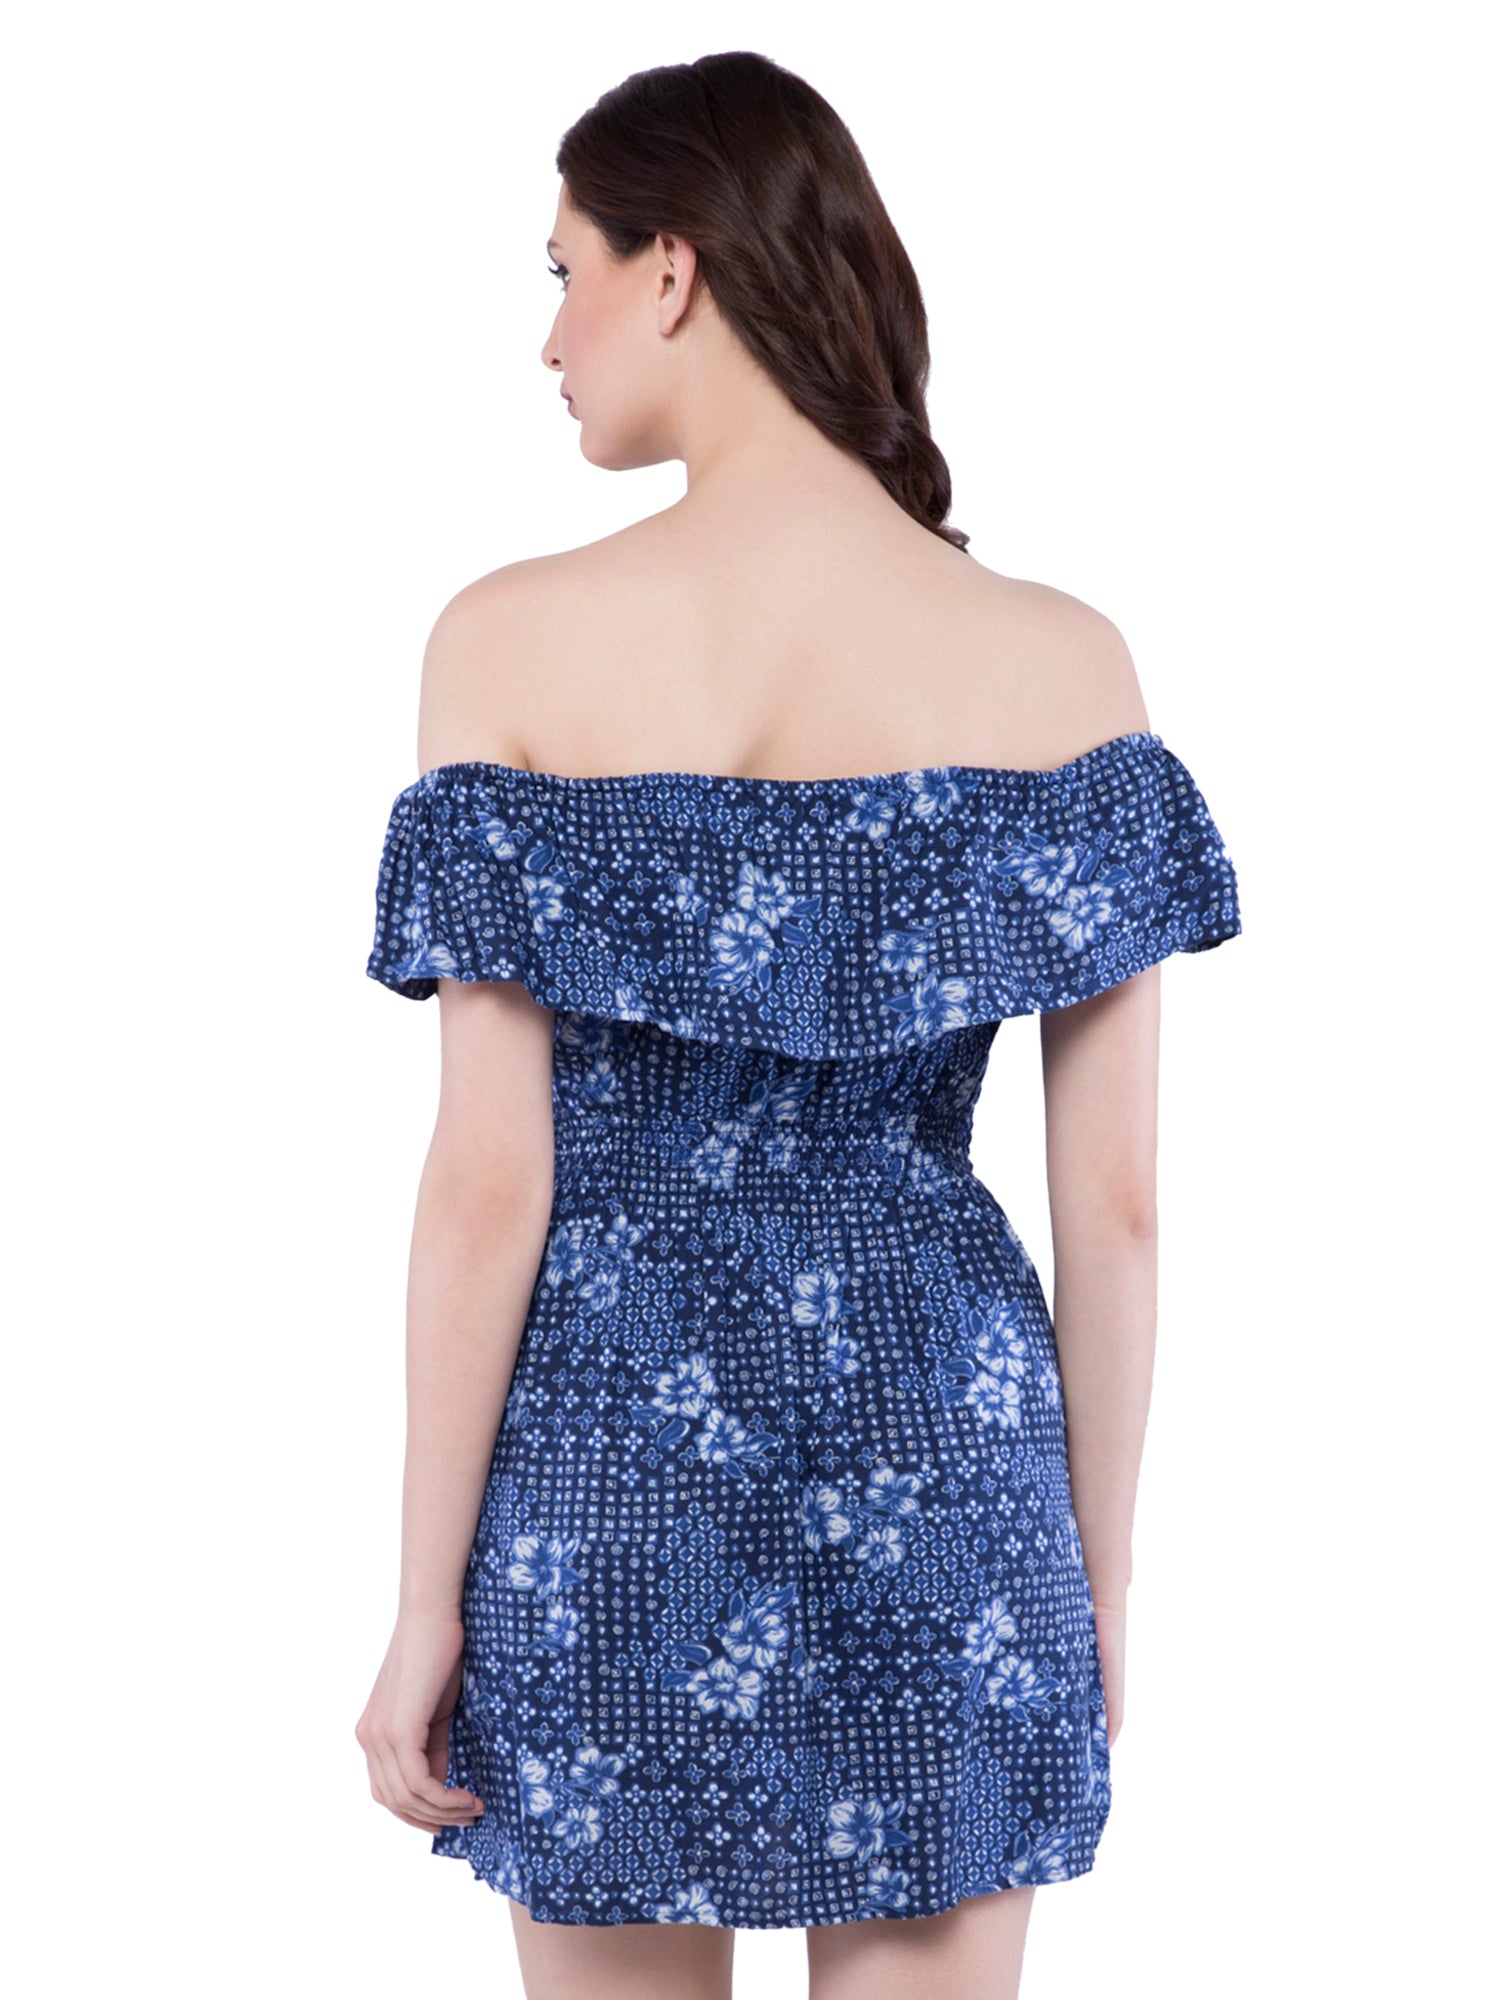 hollister blue floral dress